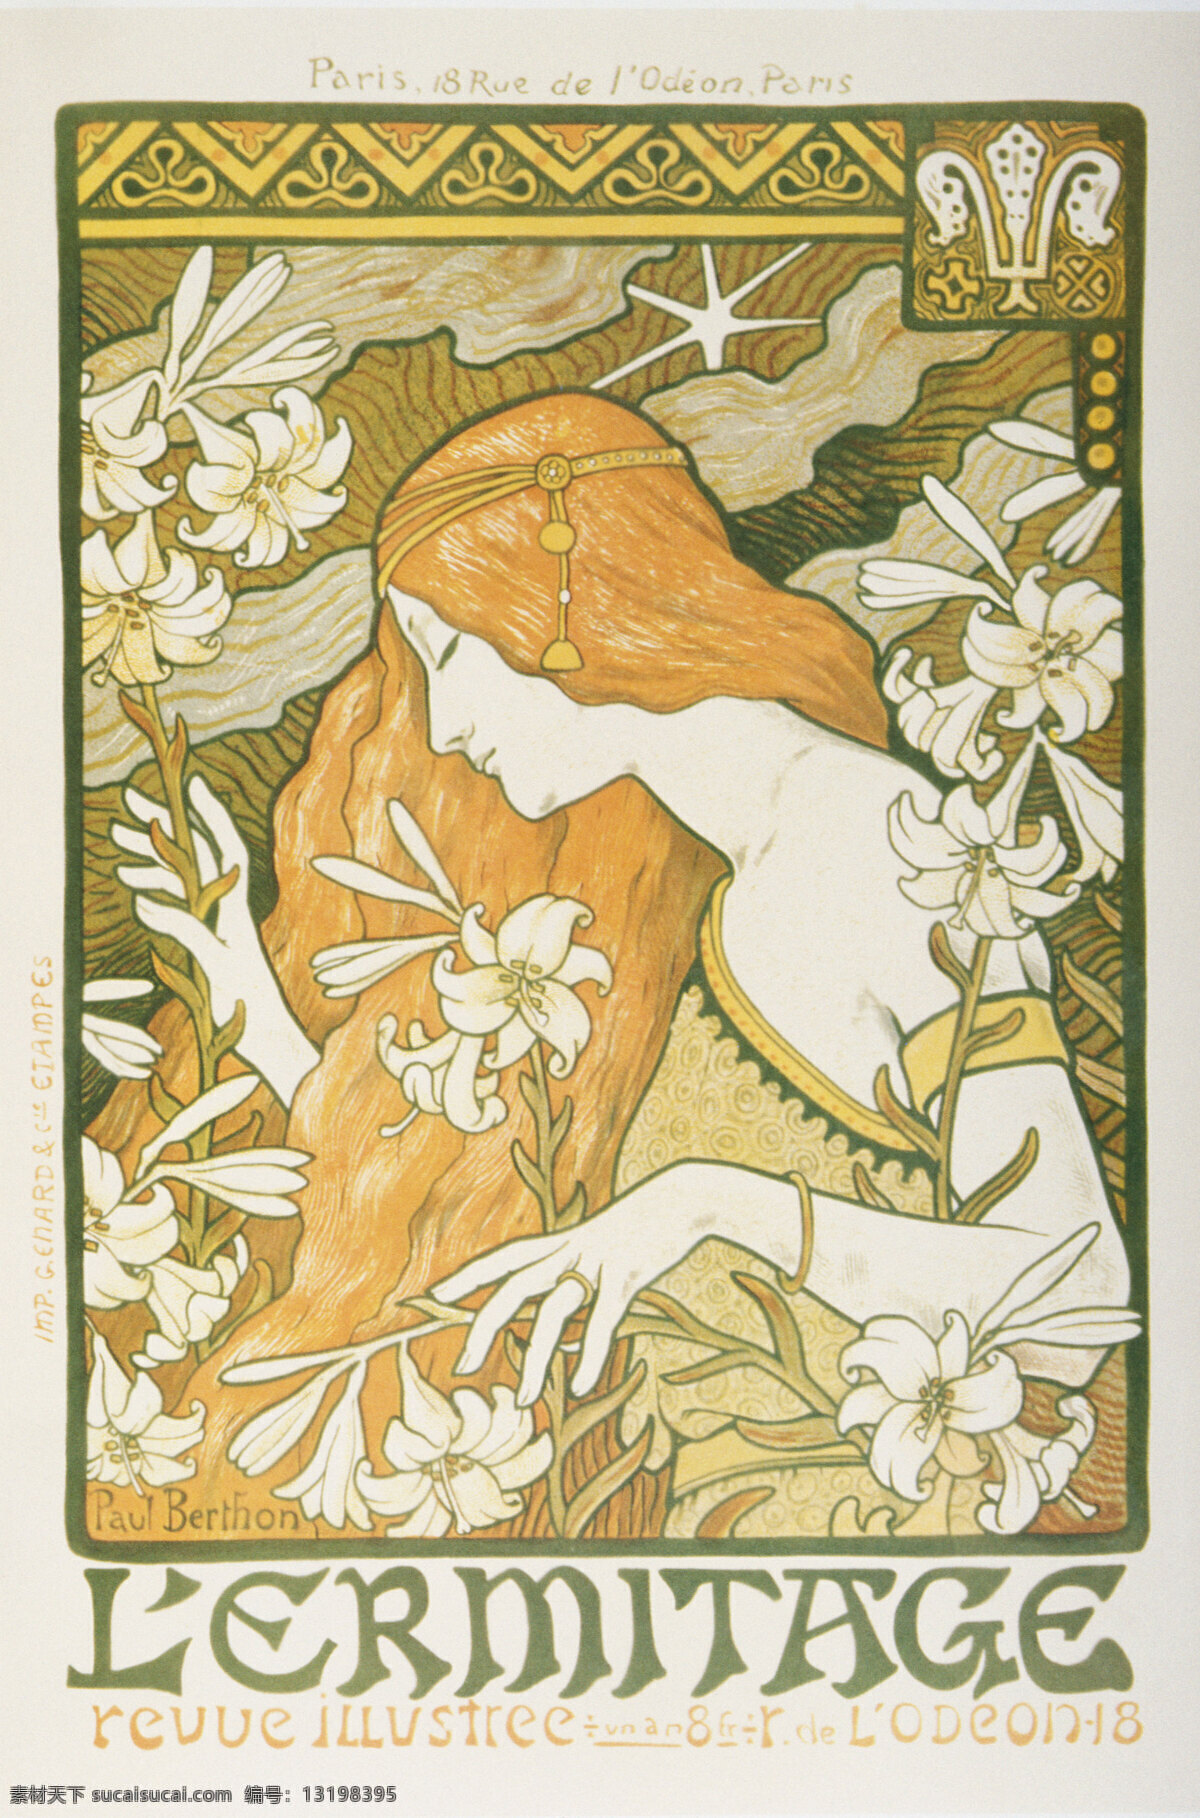 国外 花朵 金发 女人 欧式海报 欧洲 人物 欧式 海报 设计素材 模板下载 鲜花 图案 招贴设计 装饰素材